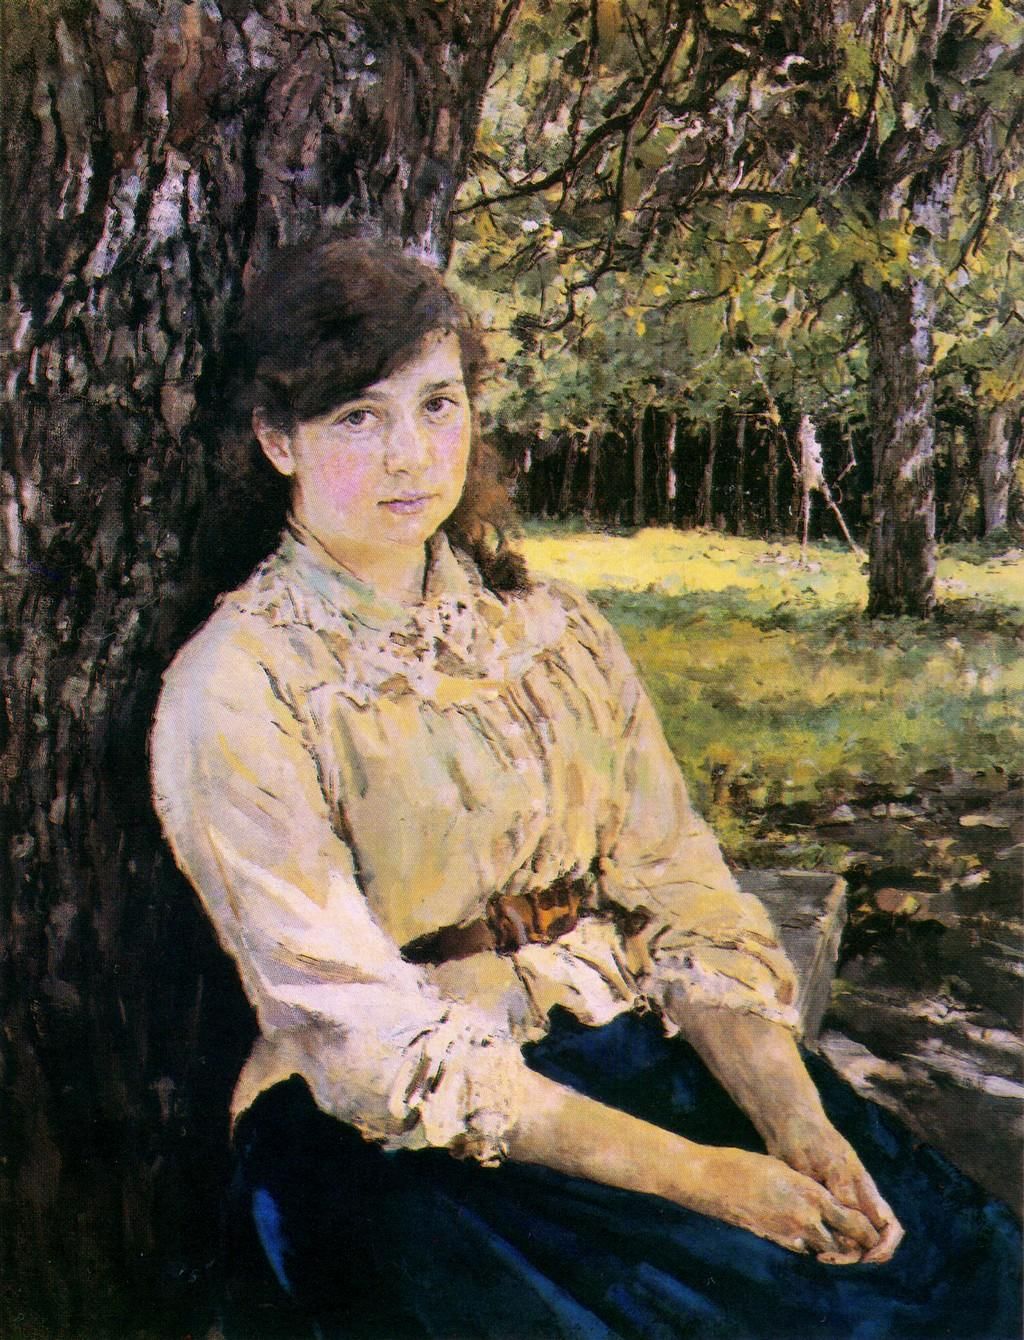 Картина Валентина Серова «Девушка, освещенная солнцем». Описание картины.